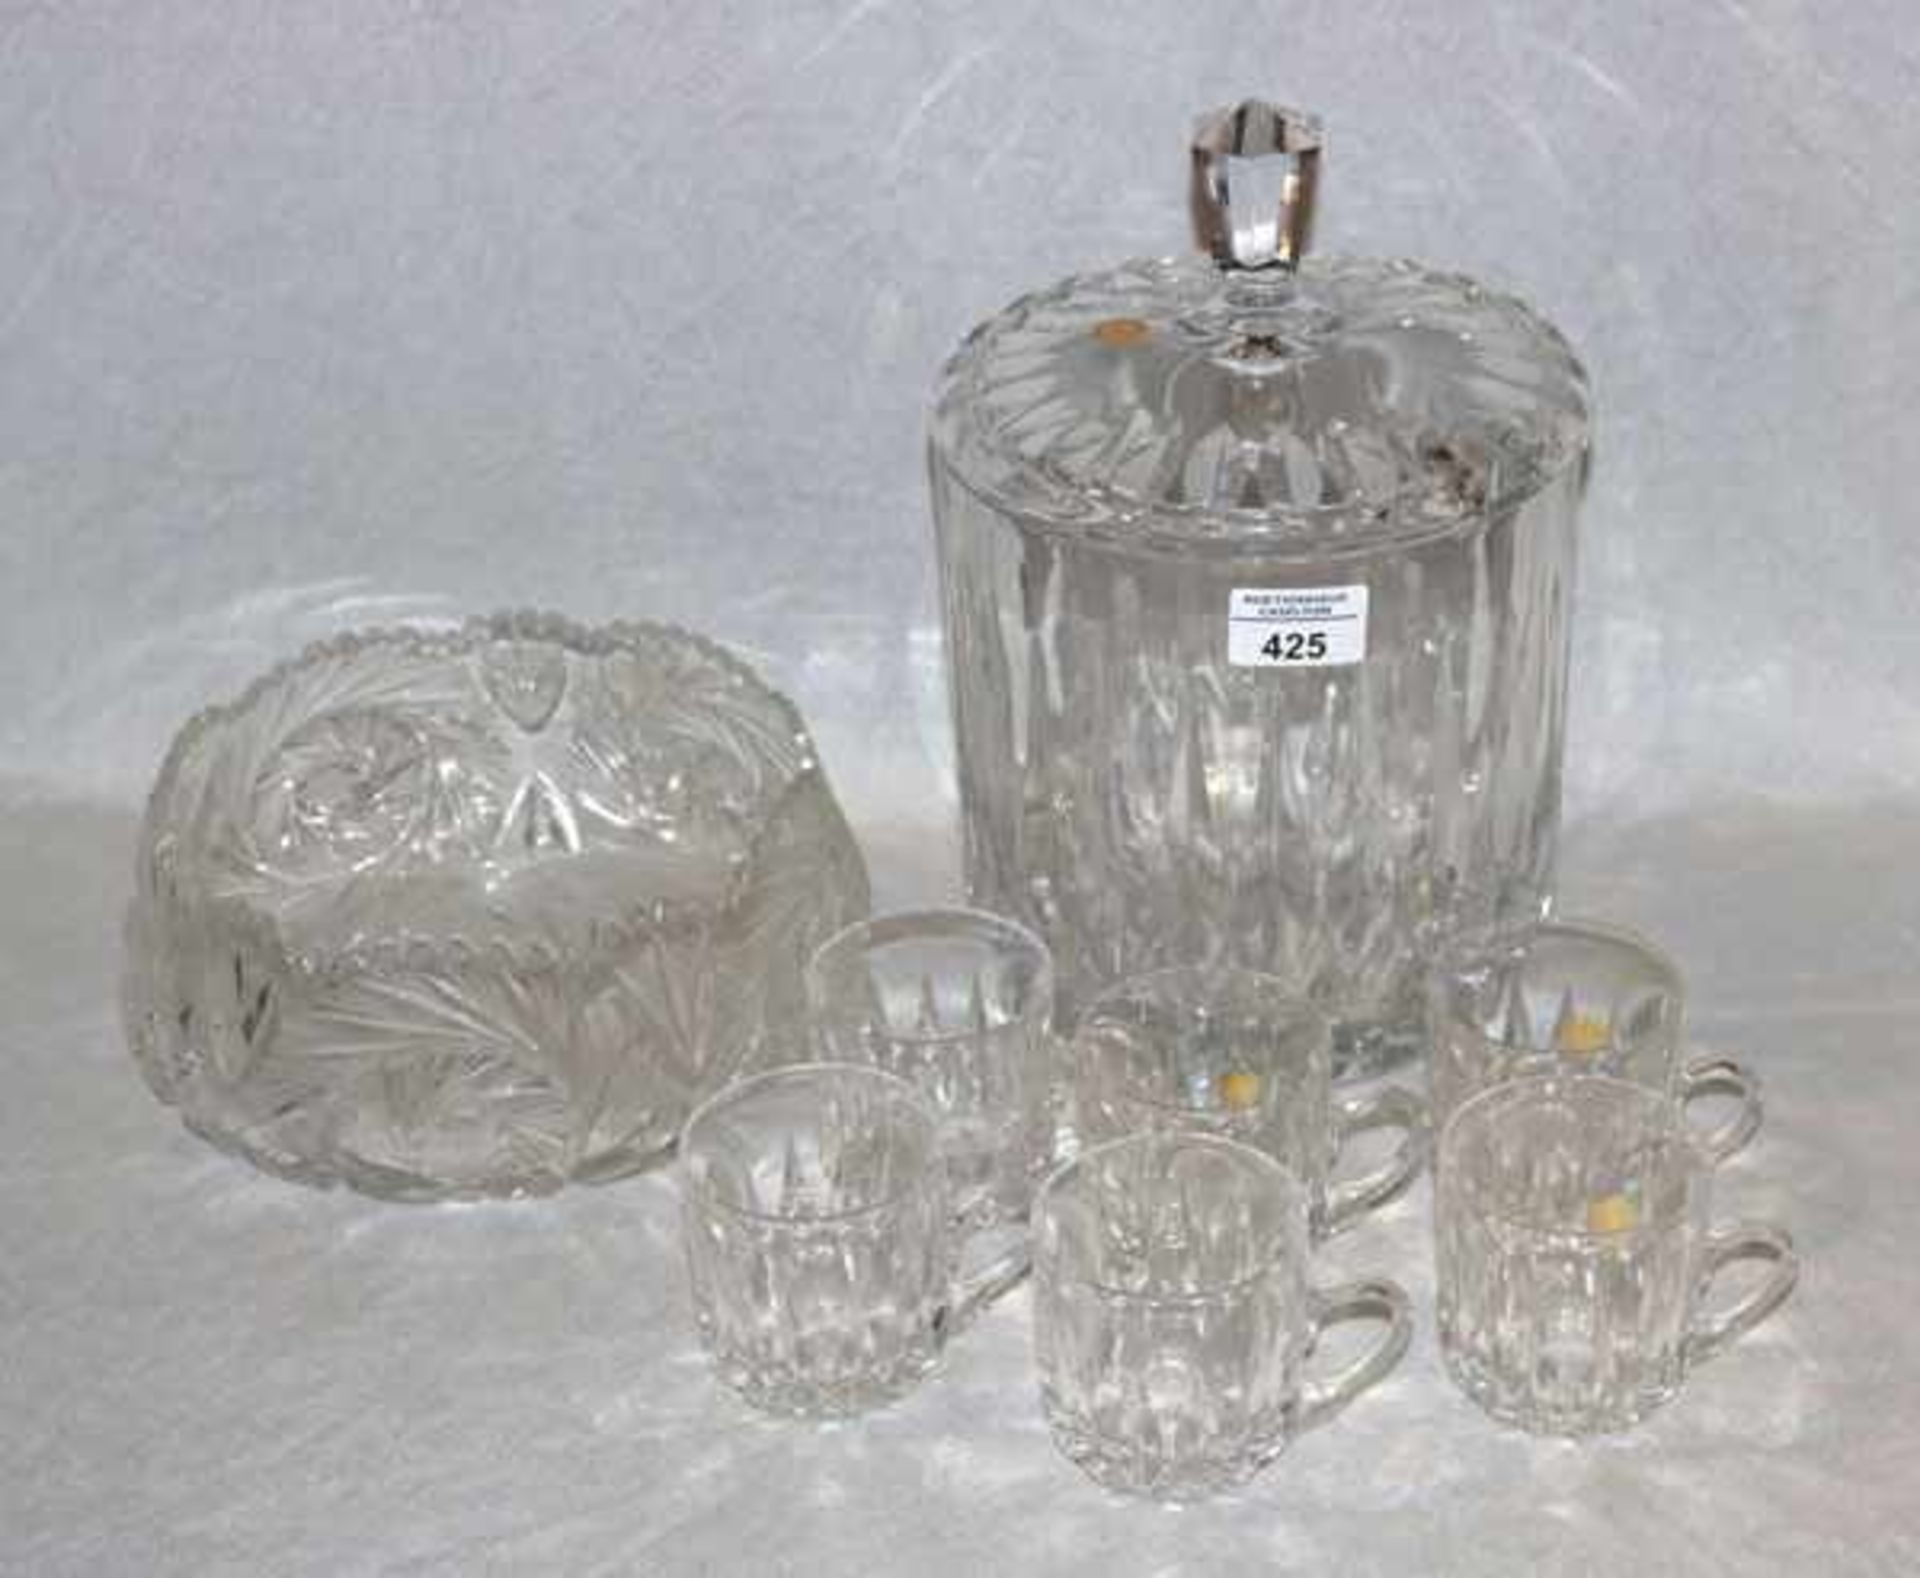 Kristallglas Bowle mit Deckel, H 28 cm, D 20 cm, und 6 passende Becher, H 8 cm, sowie Kristallglas